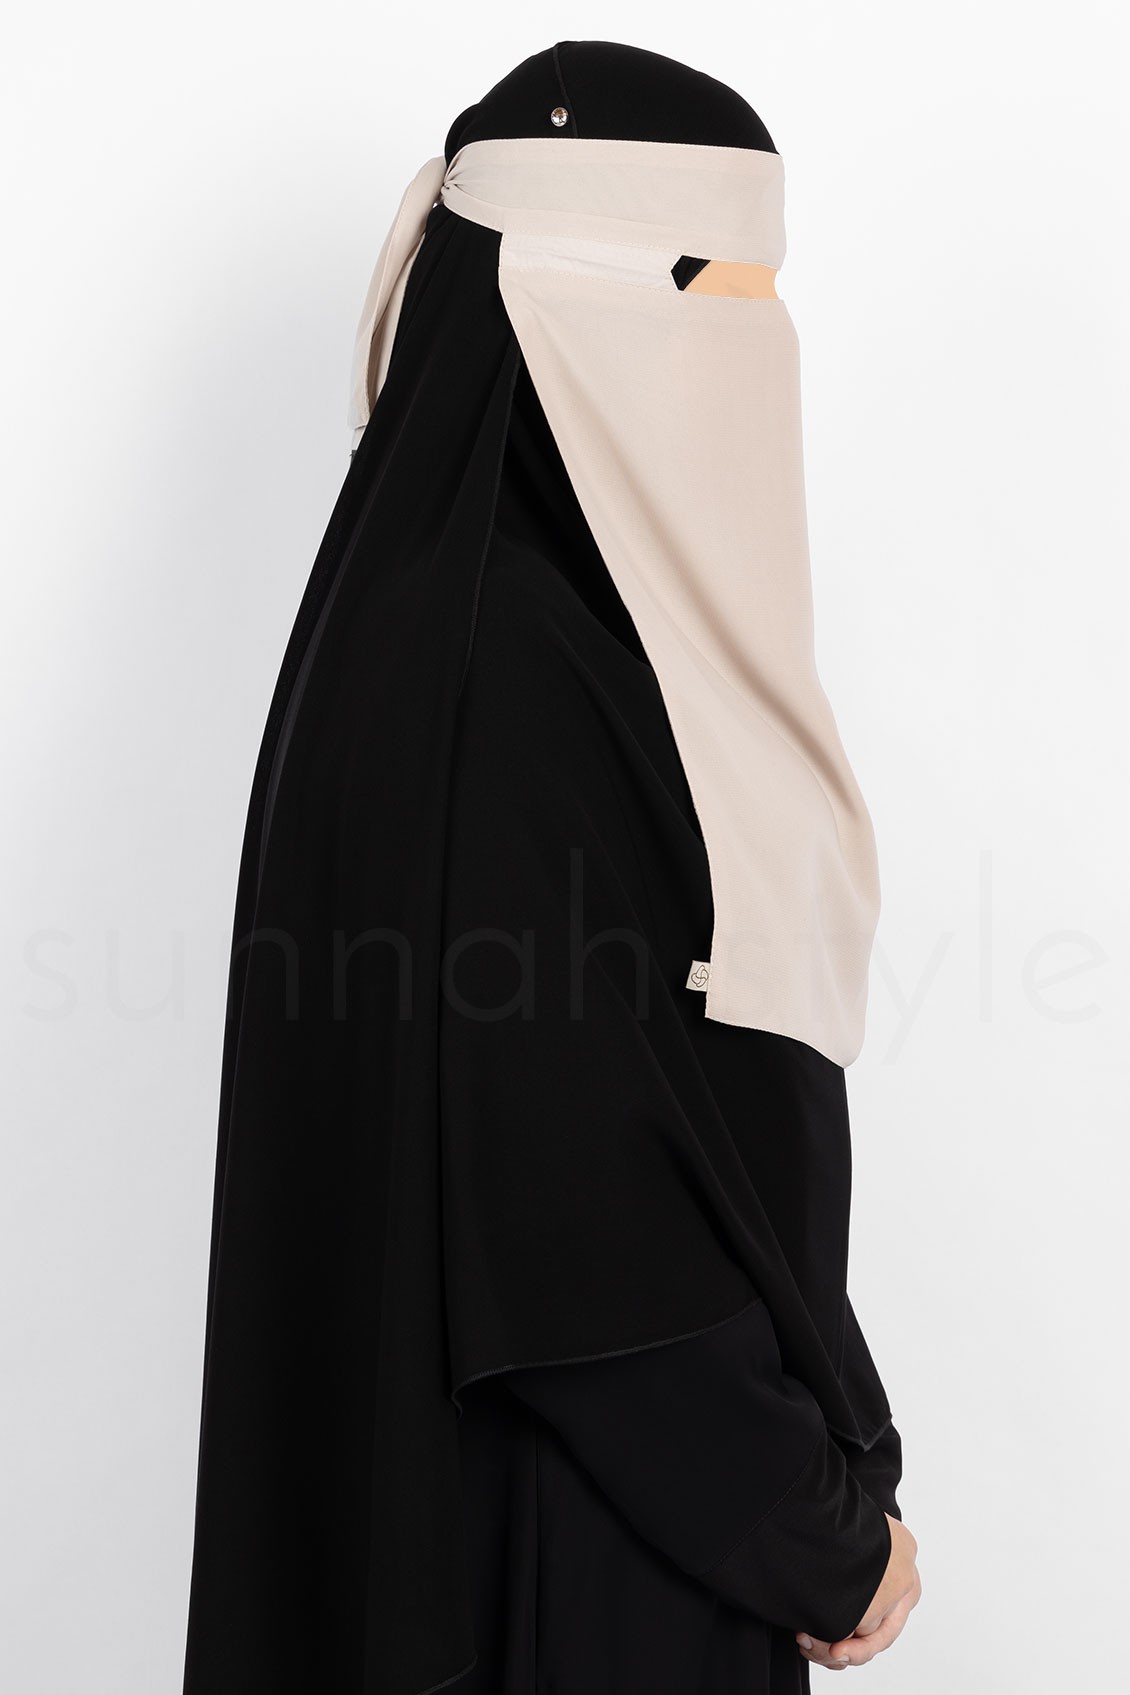 Sunnah Style No-Pinch One Layer Niqab Sahara